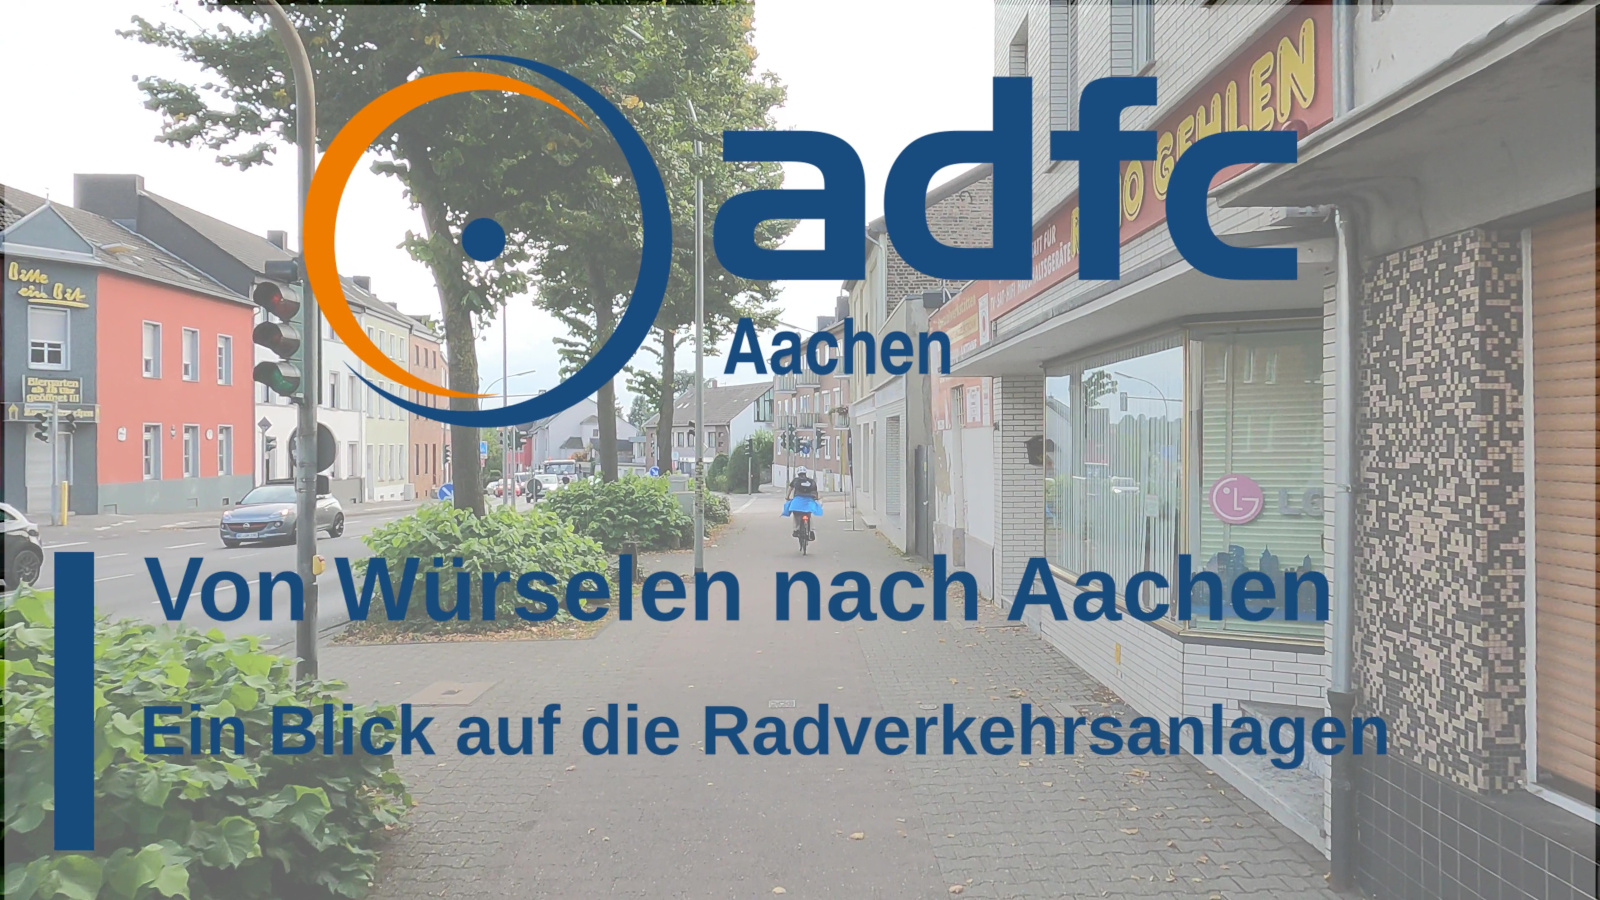 Bild: Neues Video zu den Radverkehrsanlagen zwischen Würselen und Aachen